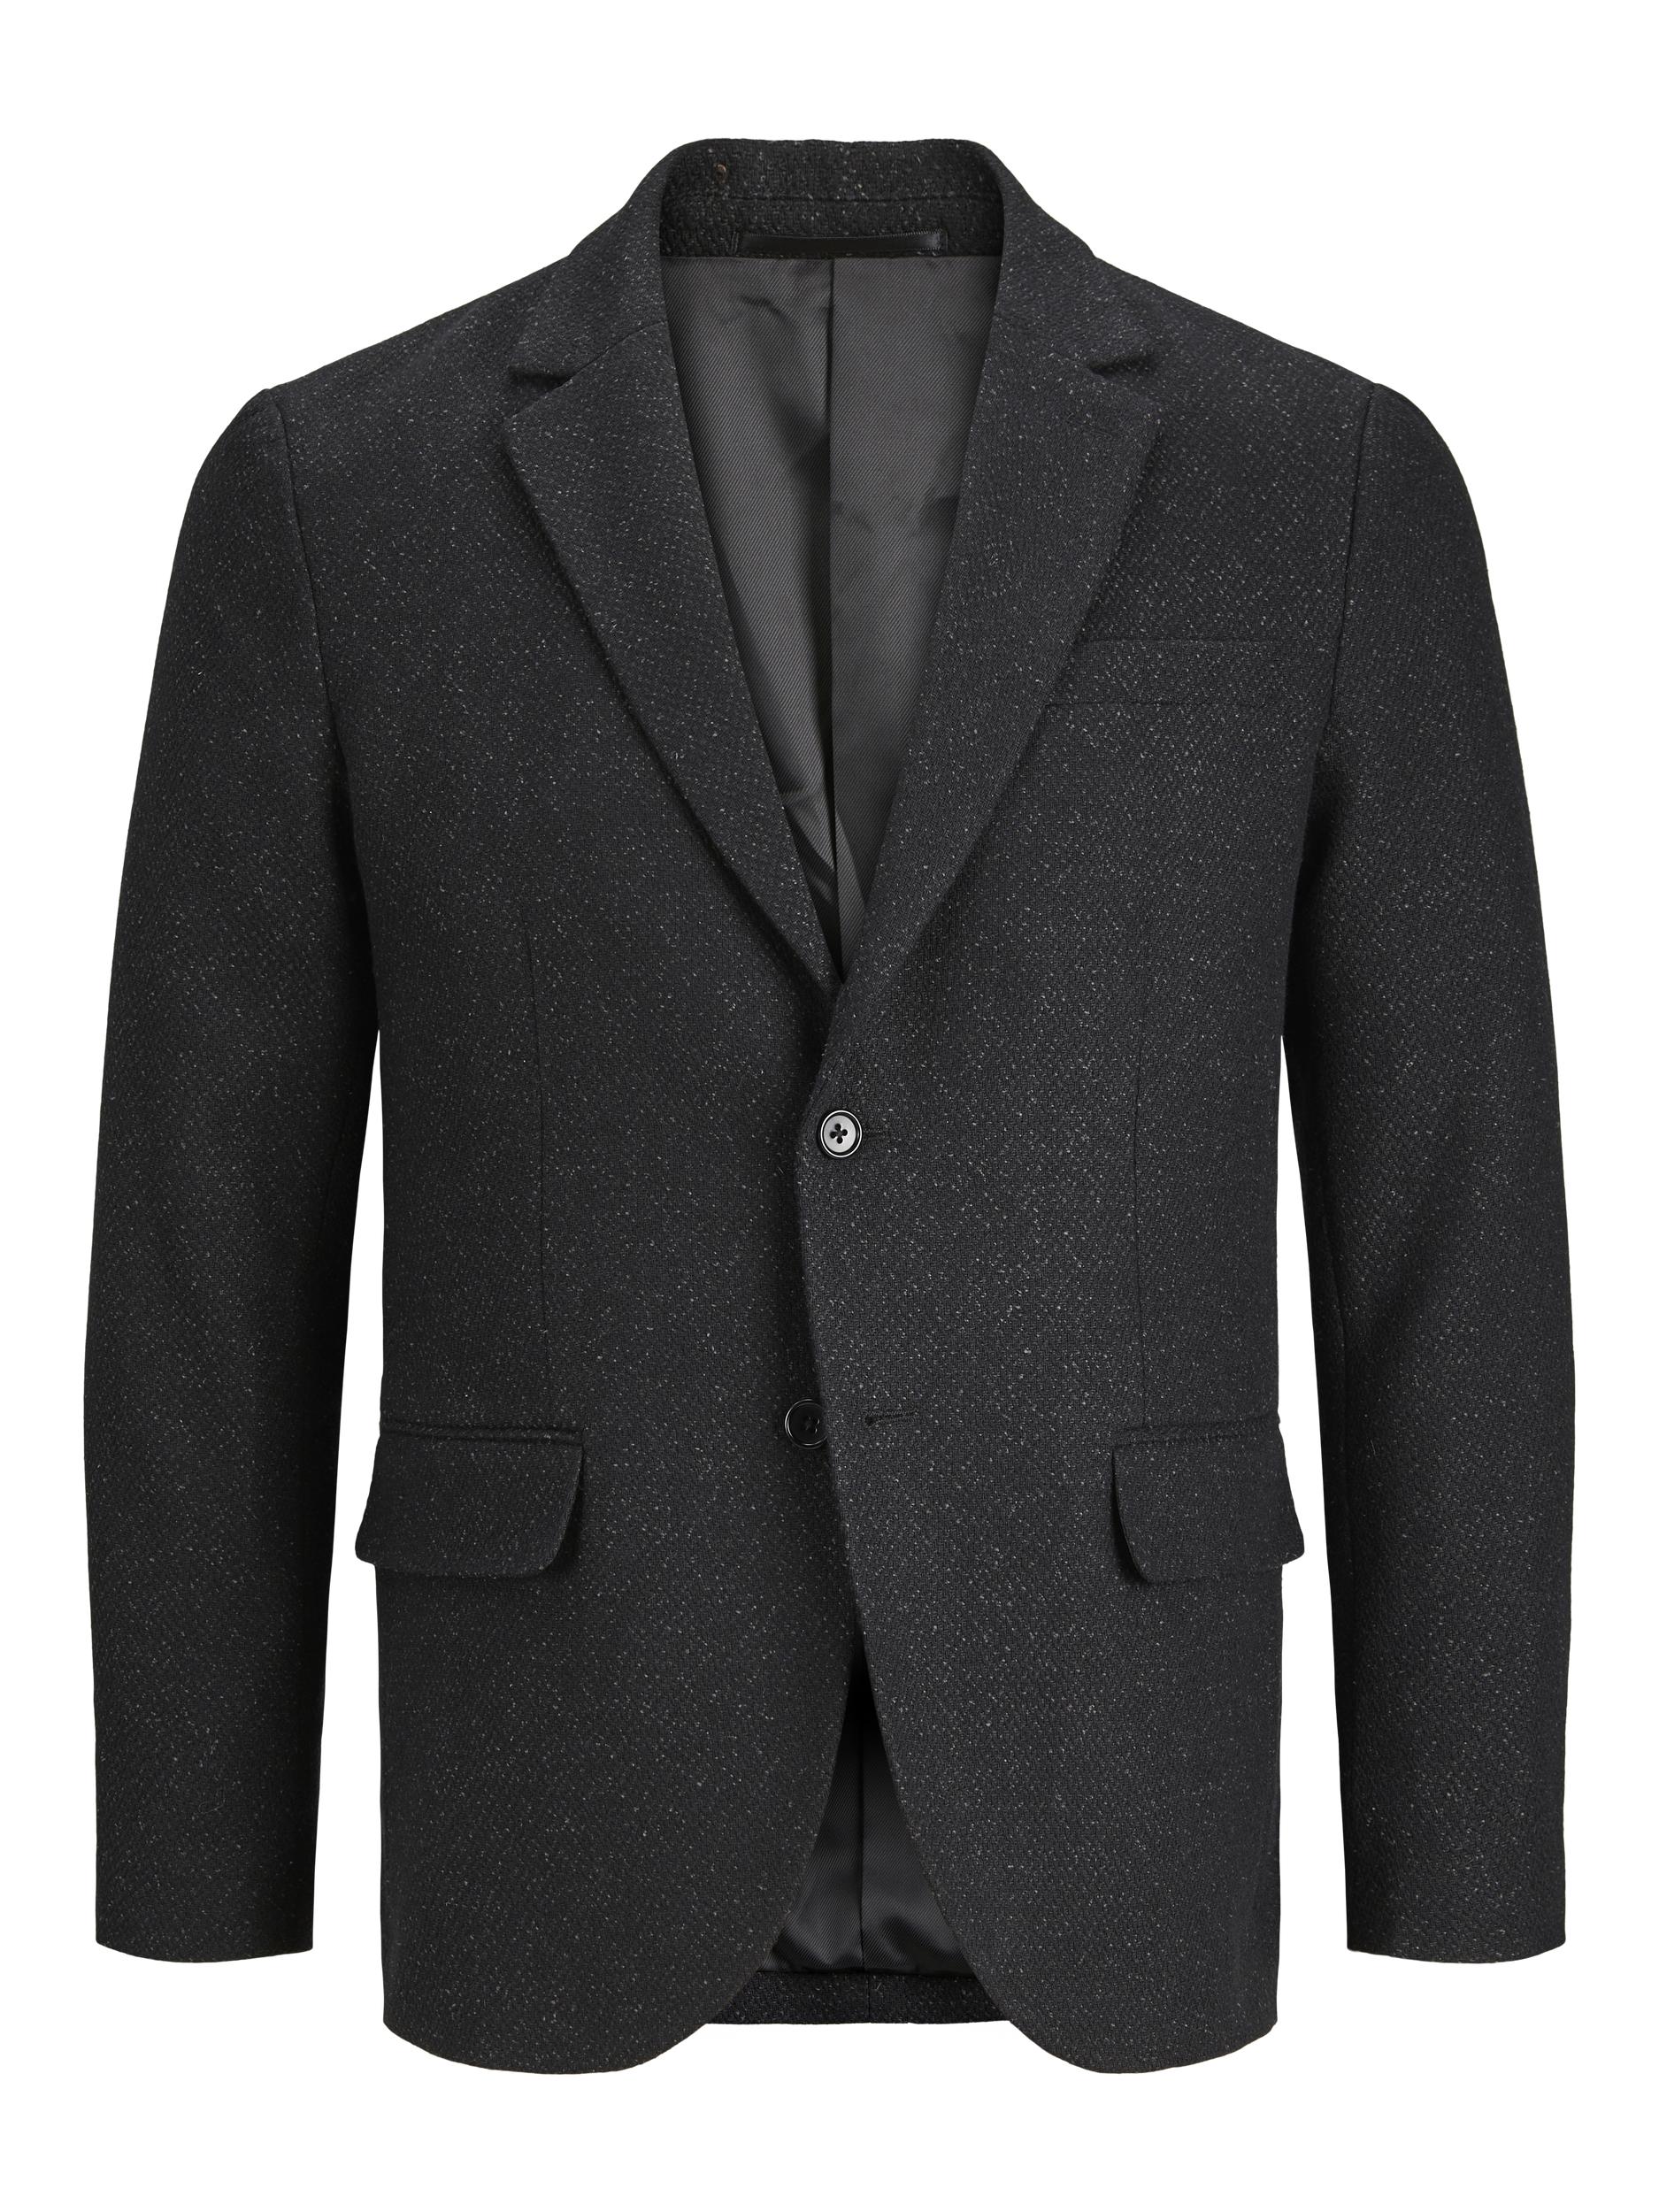 Tweed slim fit black beauty blazer-Ghost image view